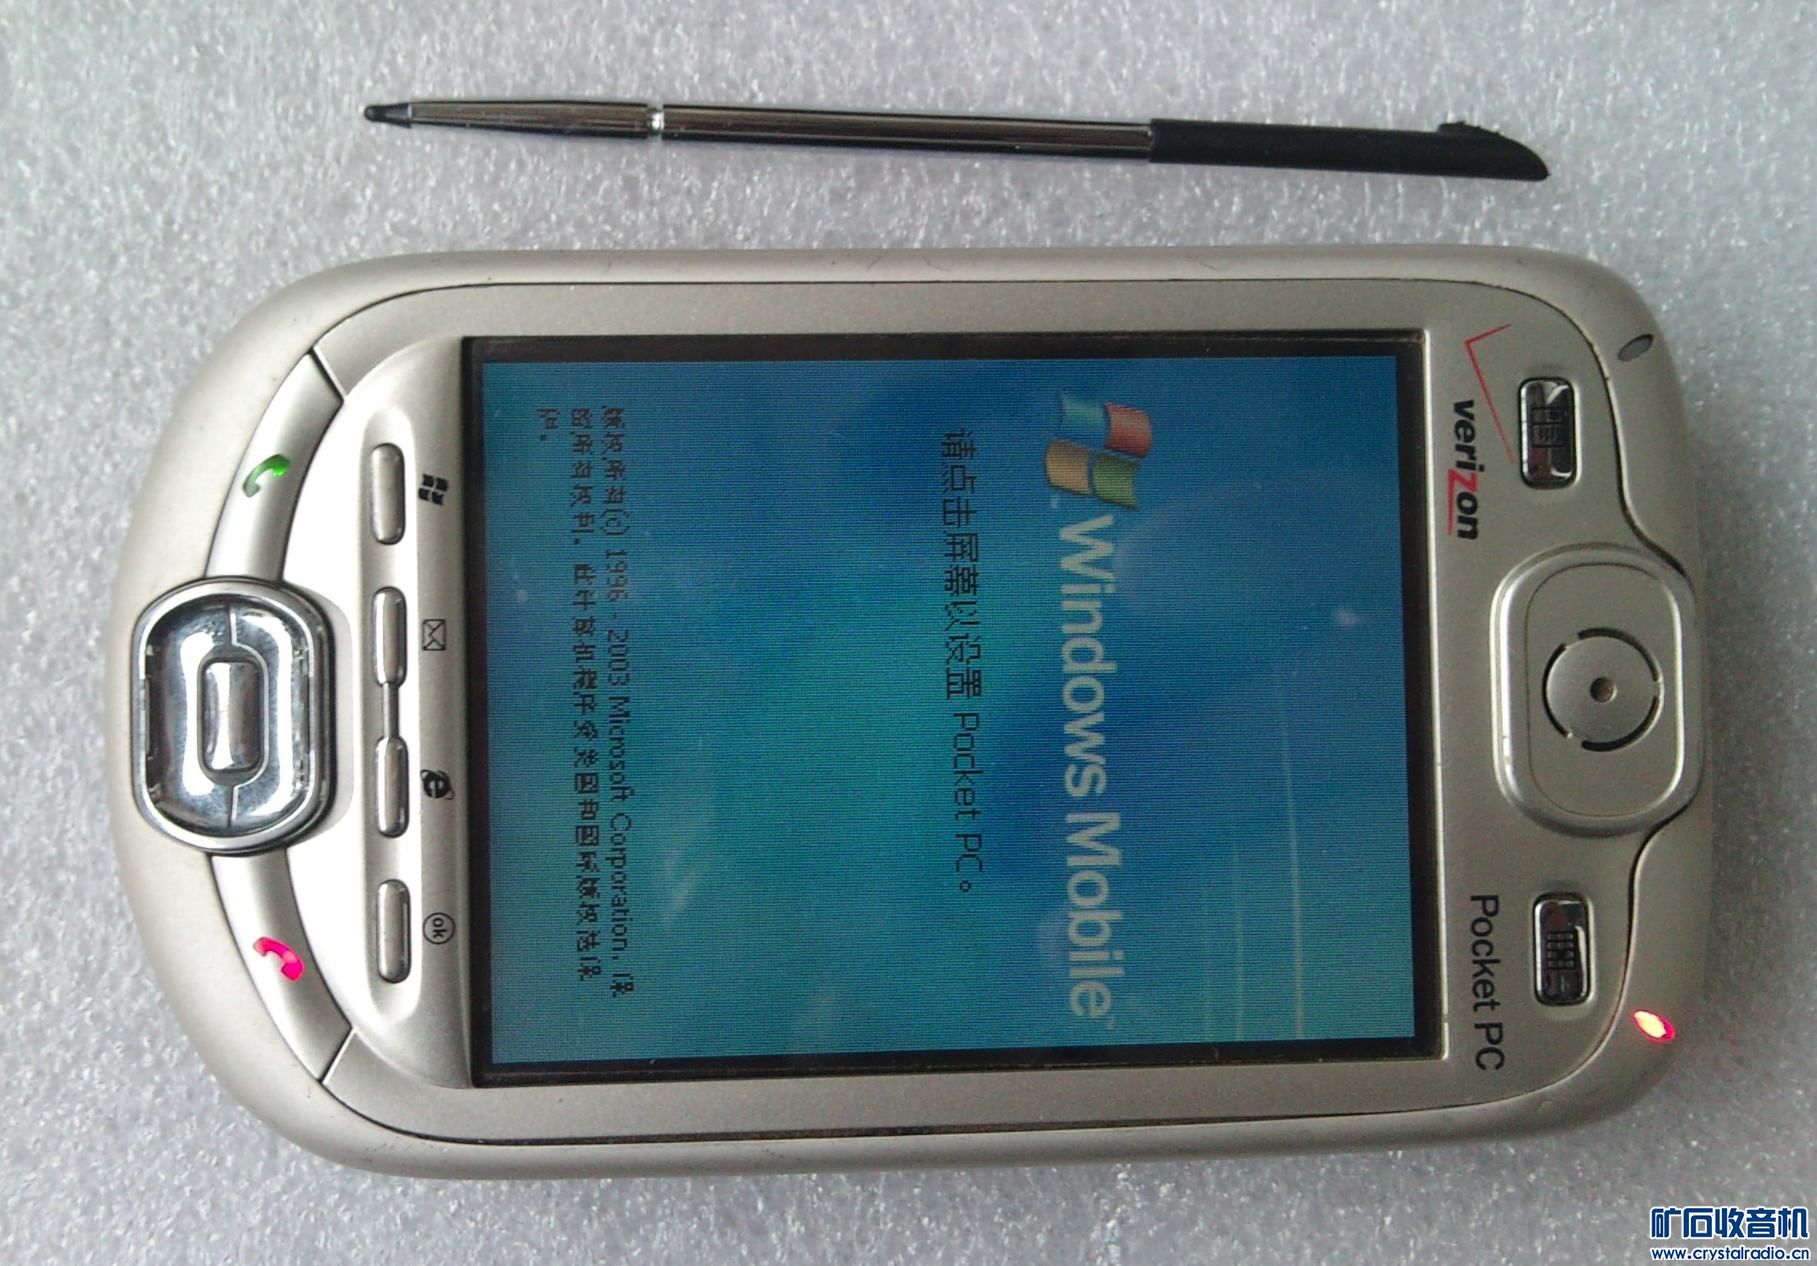 出个台湾产CDMA POCKET PC手机,电信卡可